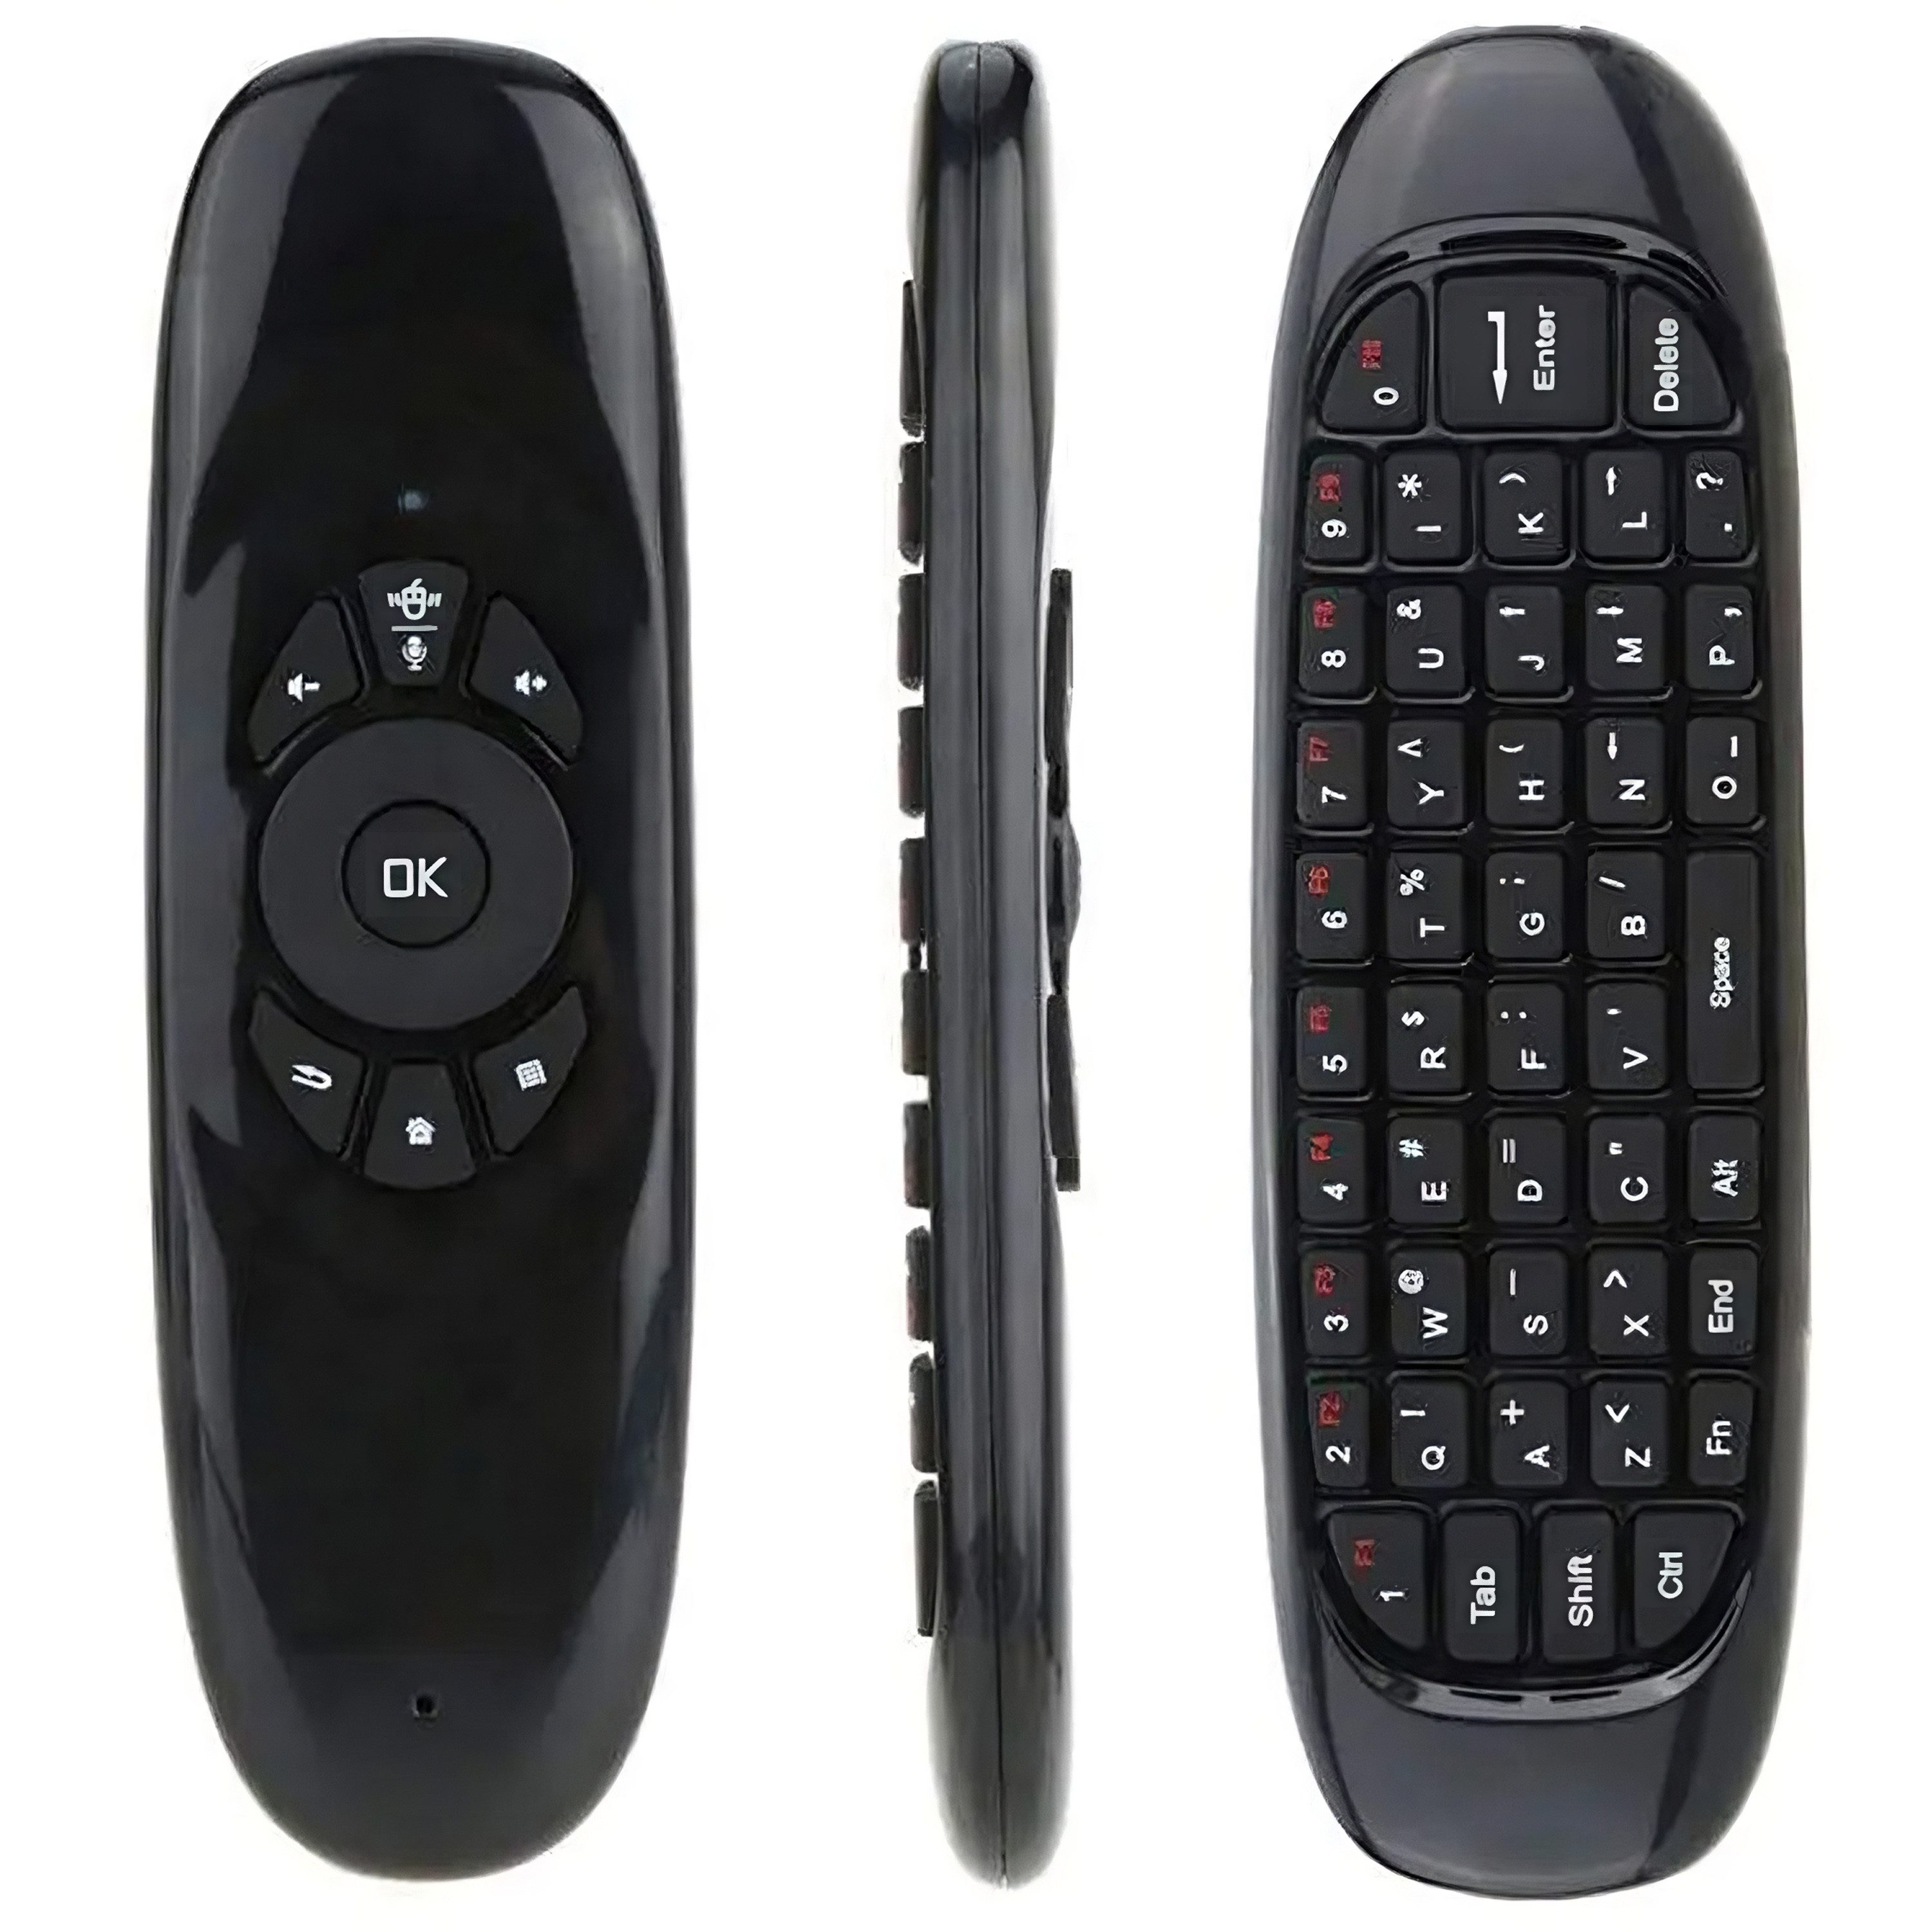 Retoo Air Mouse Fernbedienung Tastatur mit Gyro Drahtlose 2.4G TV PC Universal-Fernbedienung (Fernbedienung Tastatur und Maus, 2.4G Air Mouse, Remote Control)